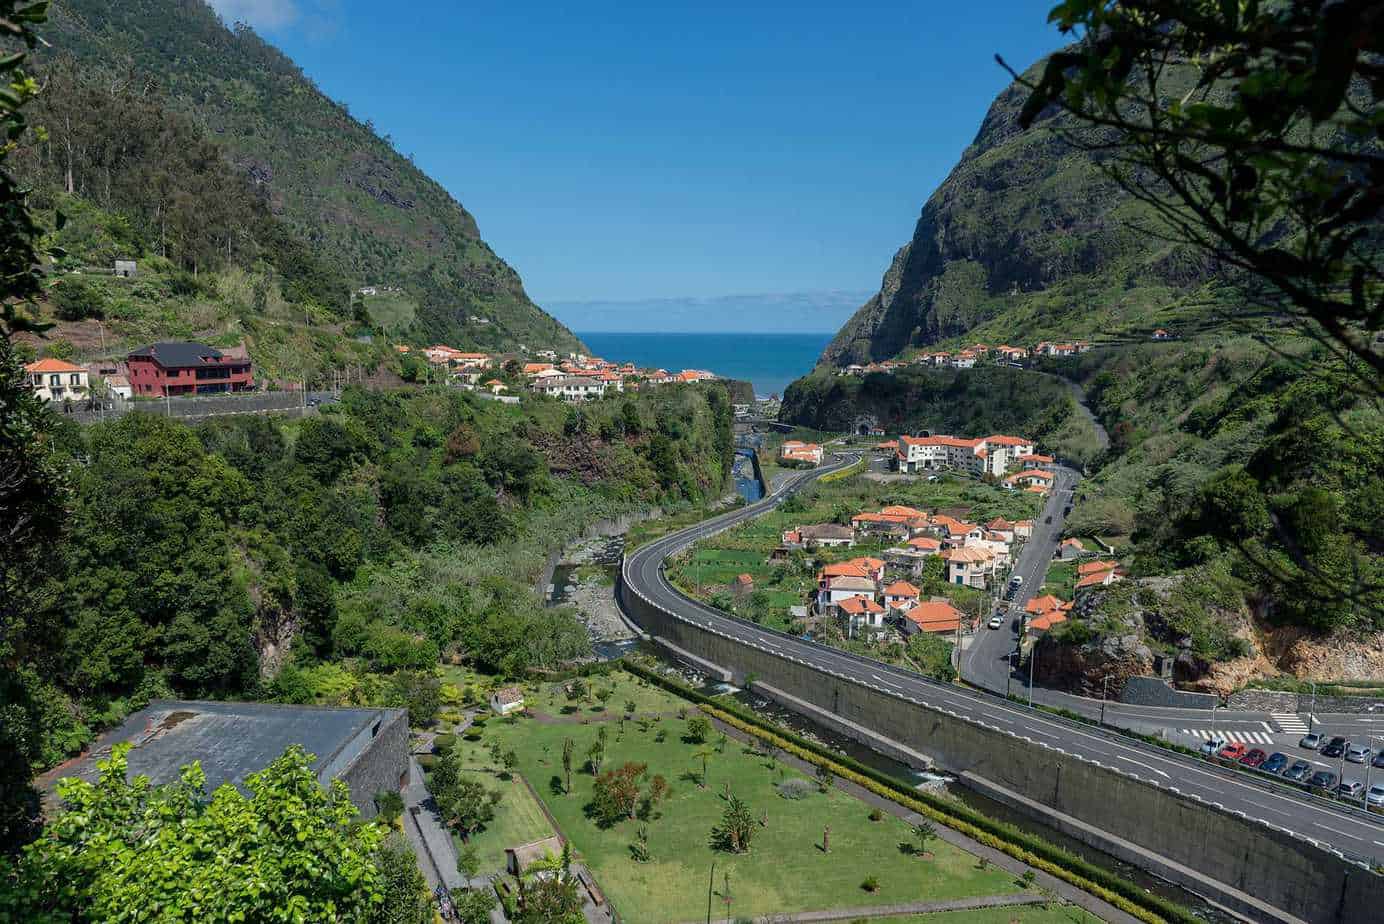 Getting around Madeira